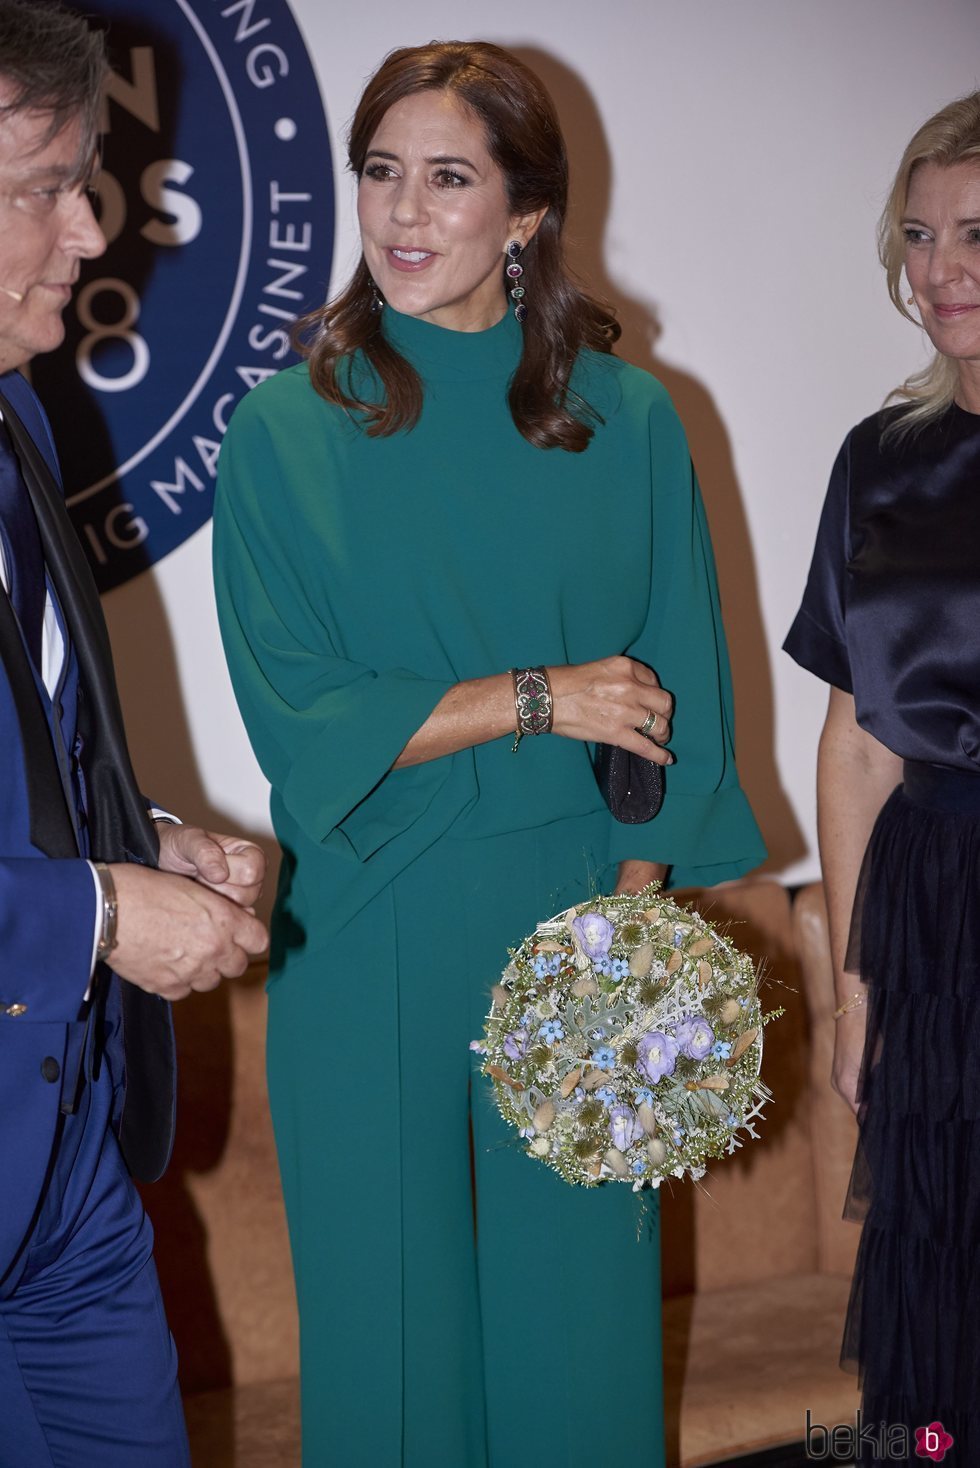 La Princesa Mary de Dinamarca presidiendo unos premios de moda en Copenhague